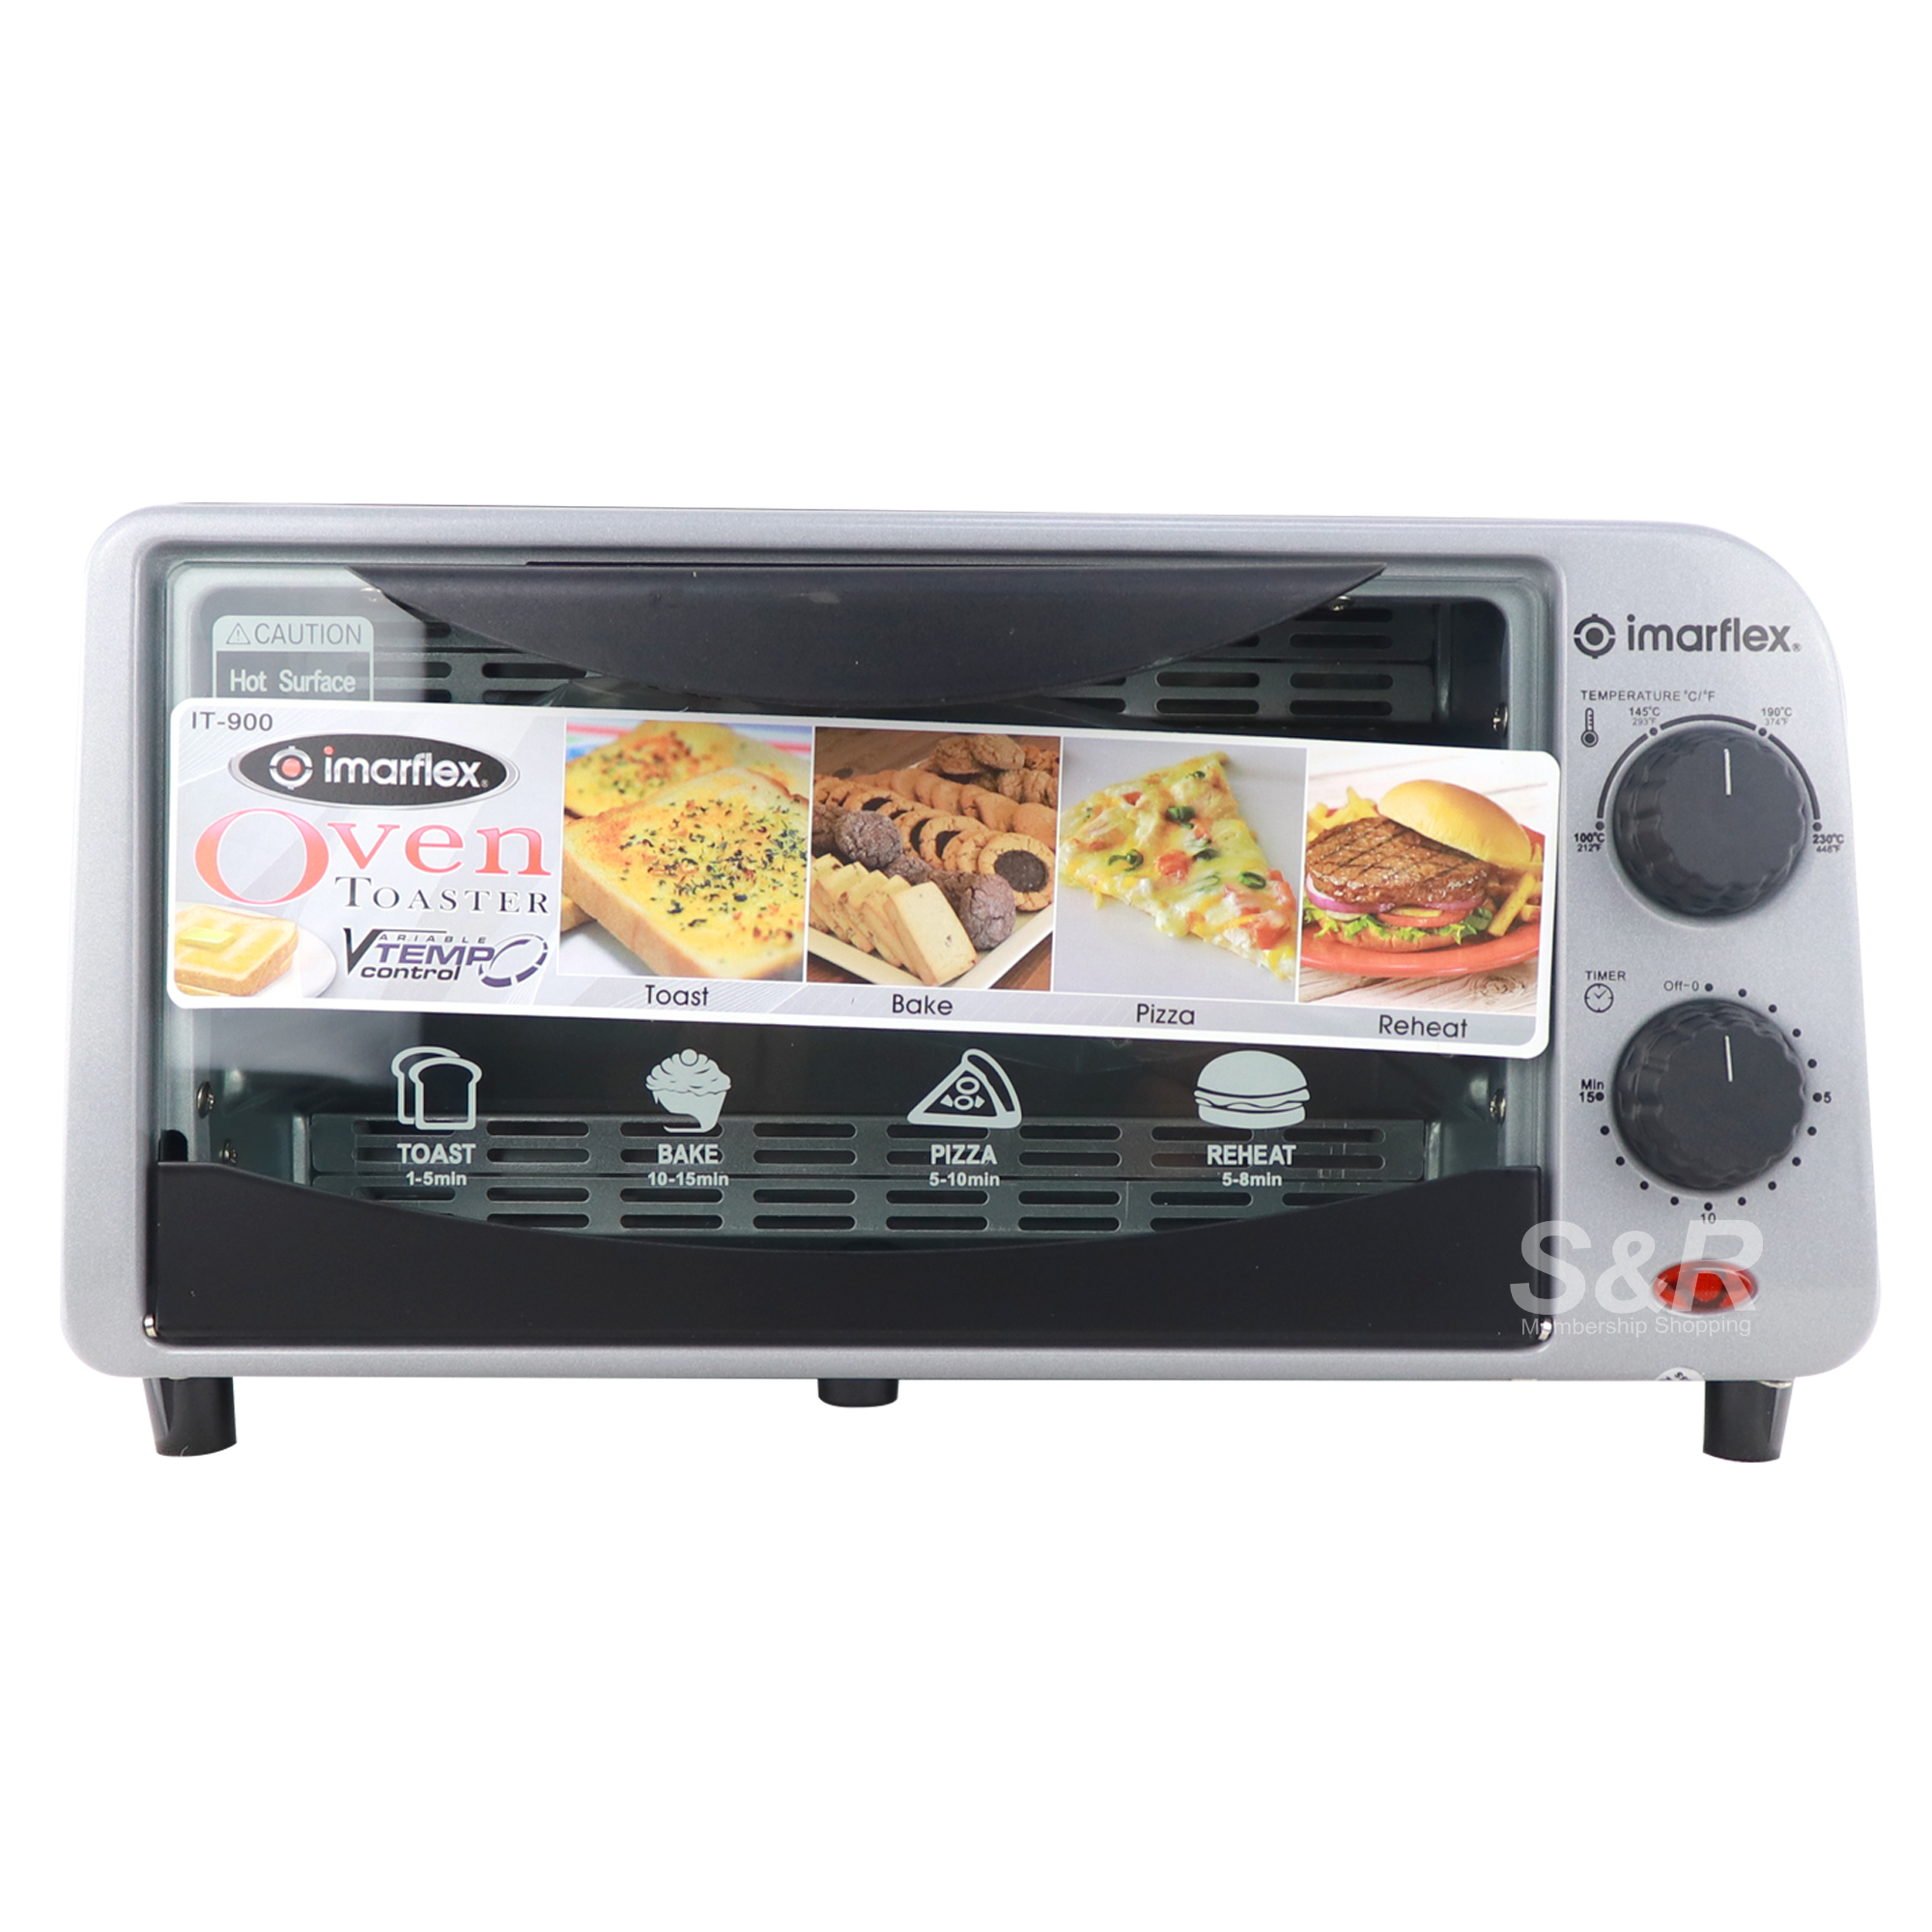 Imarflex Toaster Oven IT-900